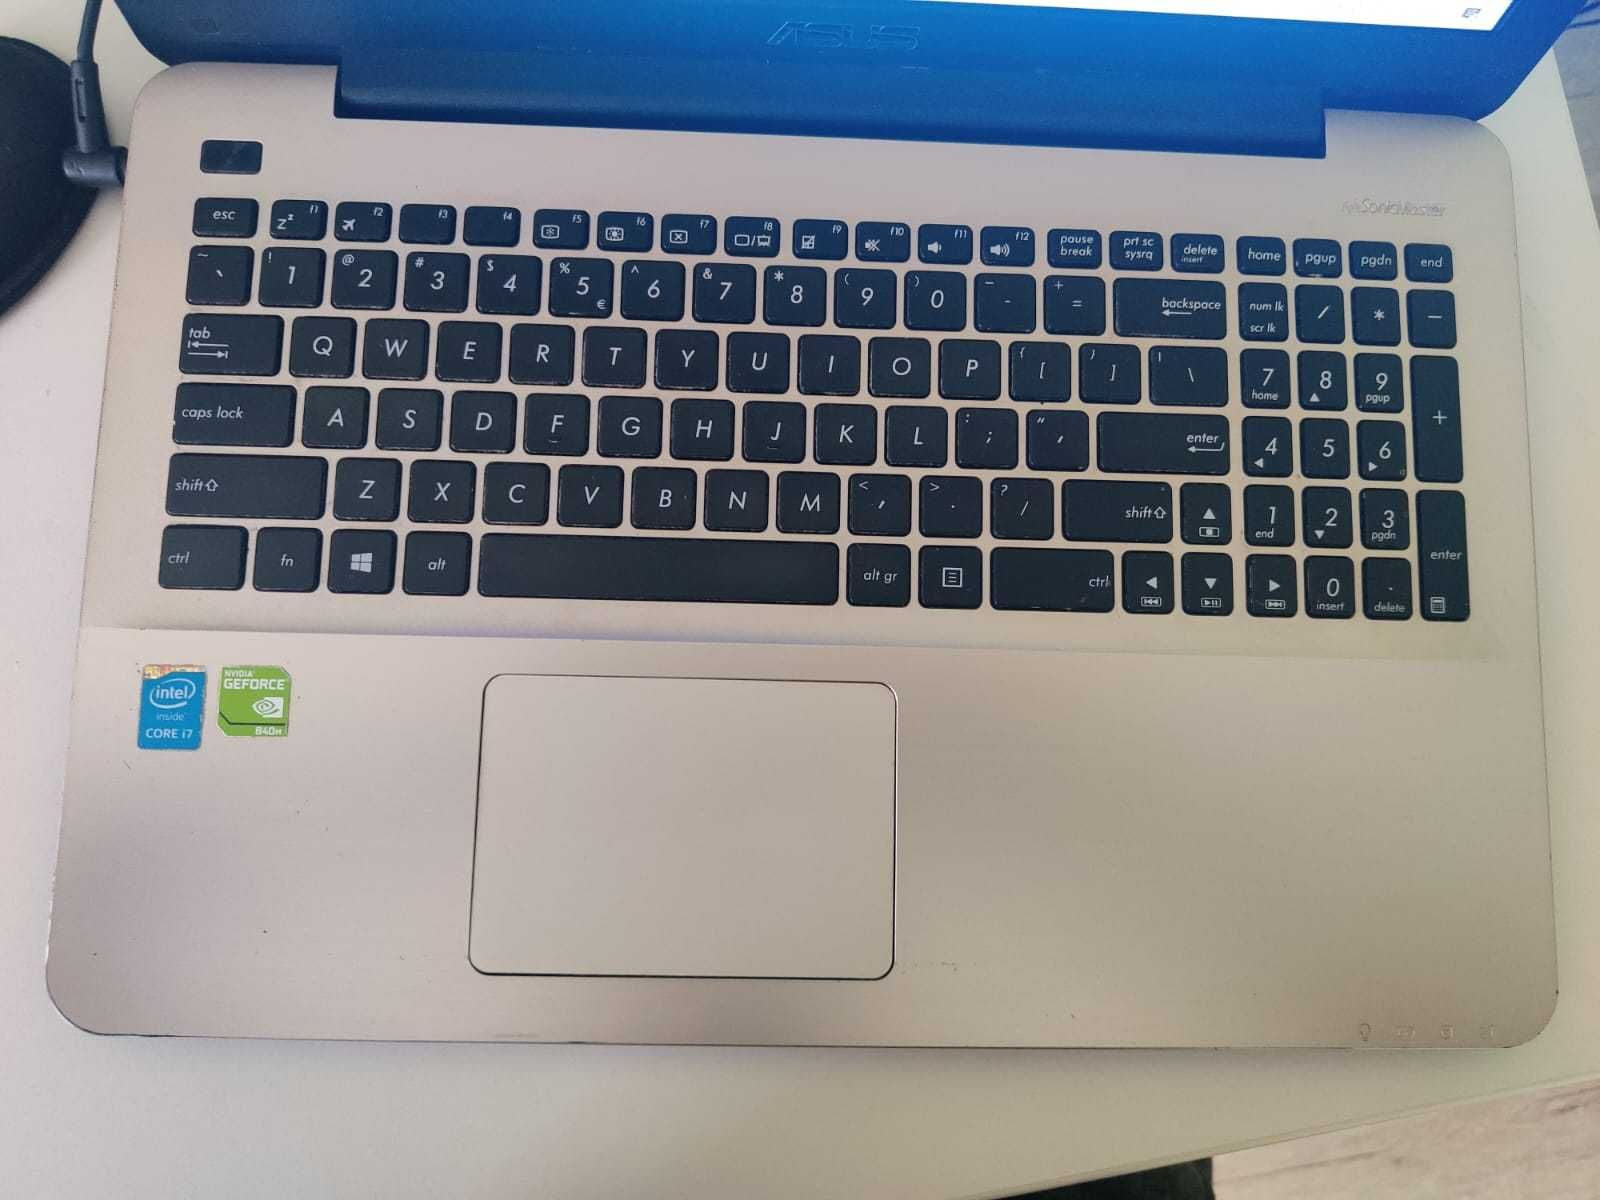 Laptop ASUS A555L